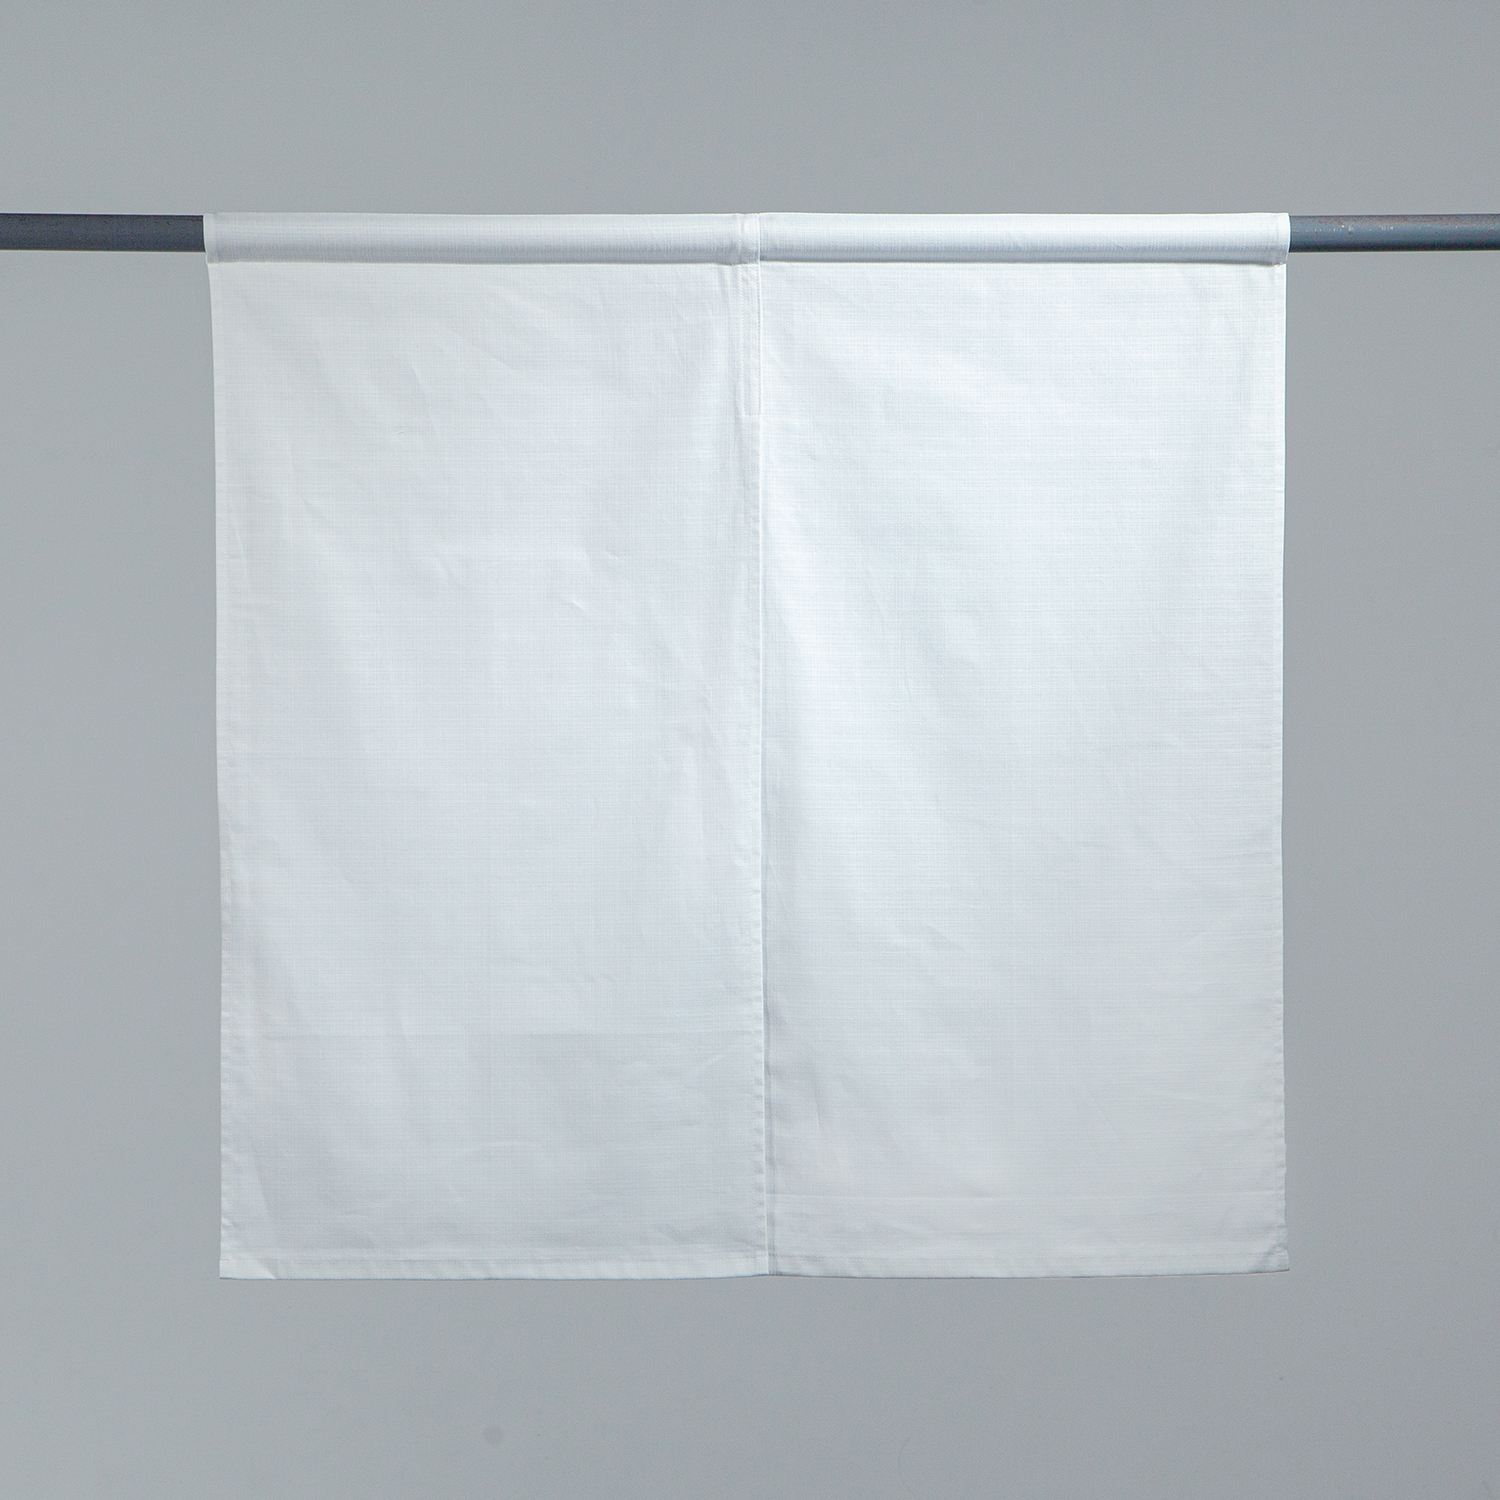 ブッチャー 暖簾 中むら東京でのれんの企画 デザイン オーダーメイド製作